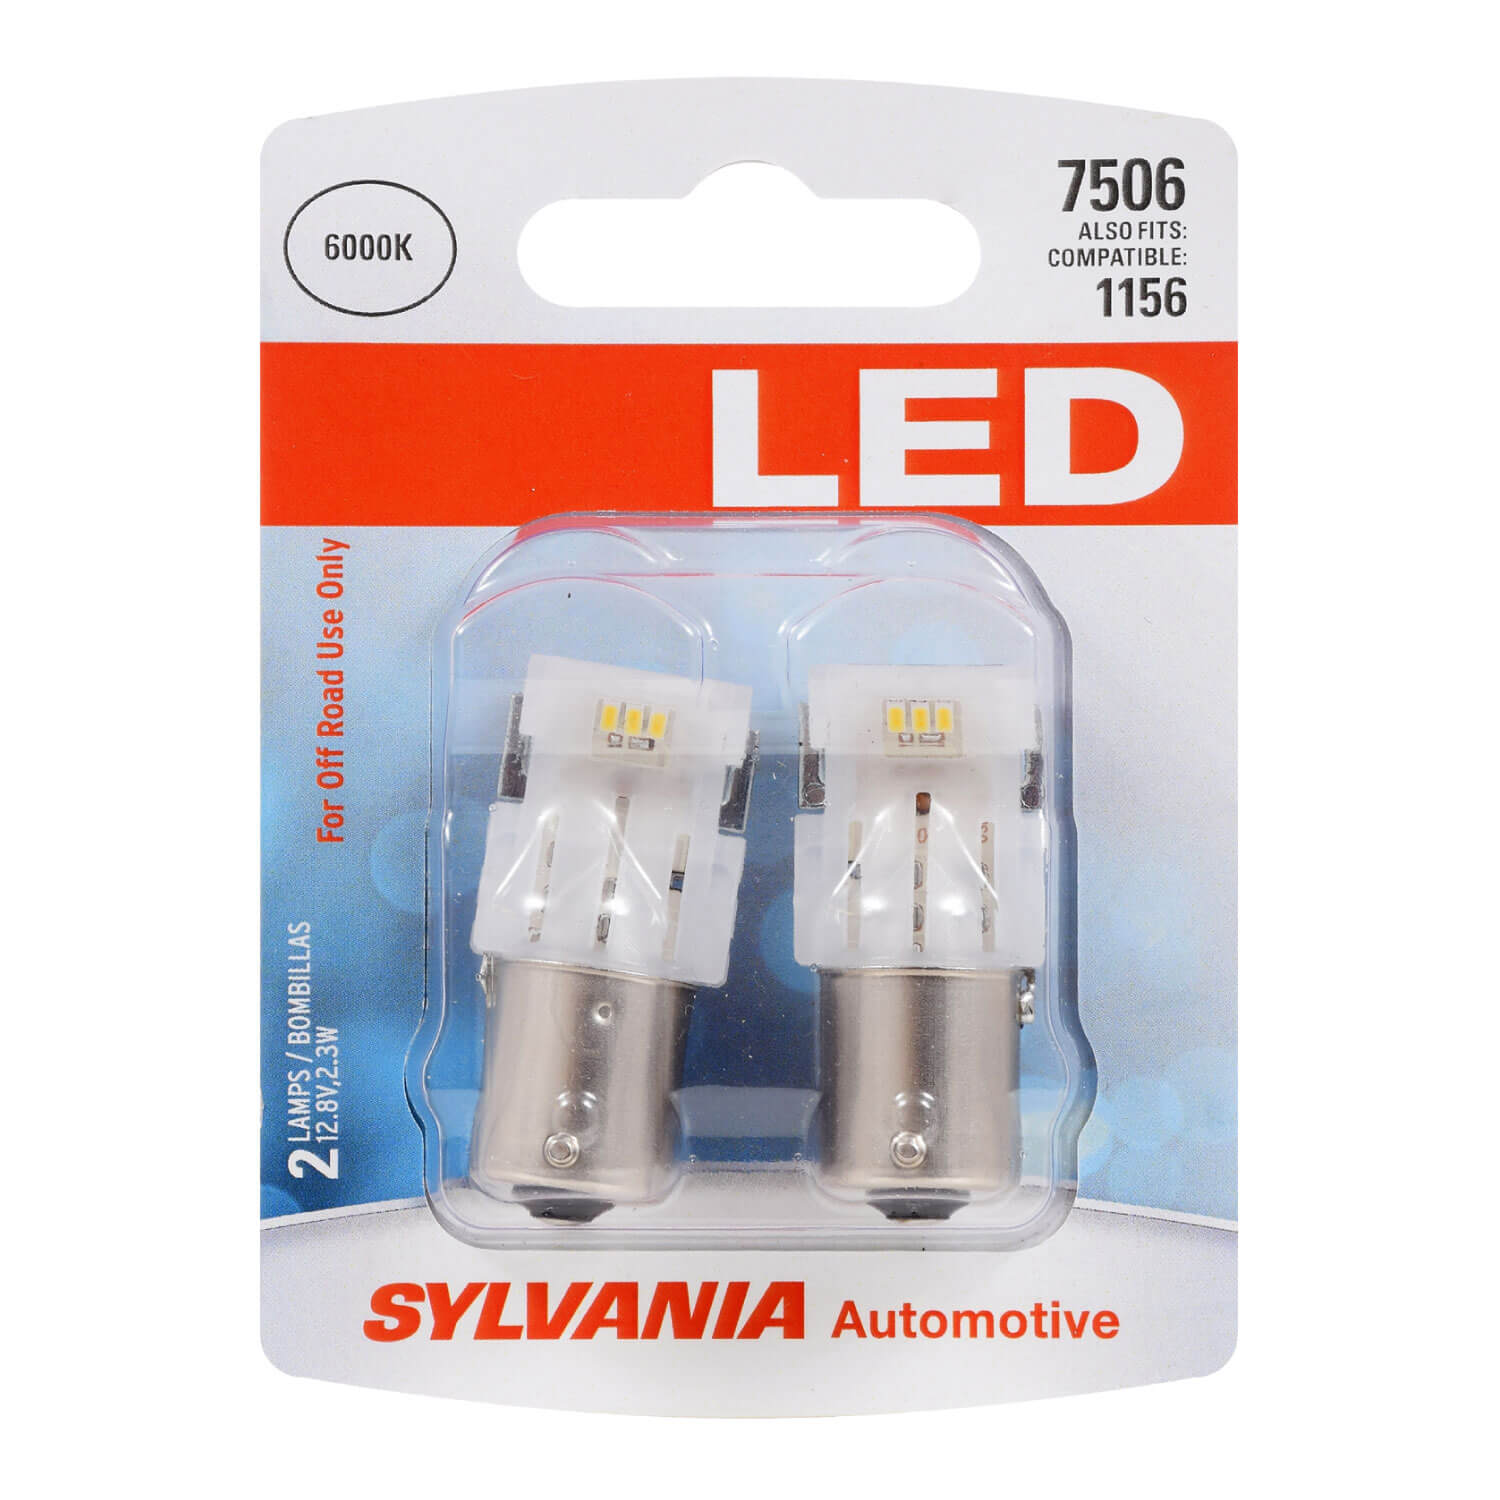 Turn Signal Light Bulb-ZEVO Blister Pack Twin SYLVANIA RETAIL PACKS 7506LED.BP2